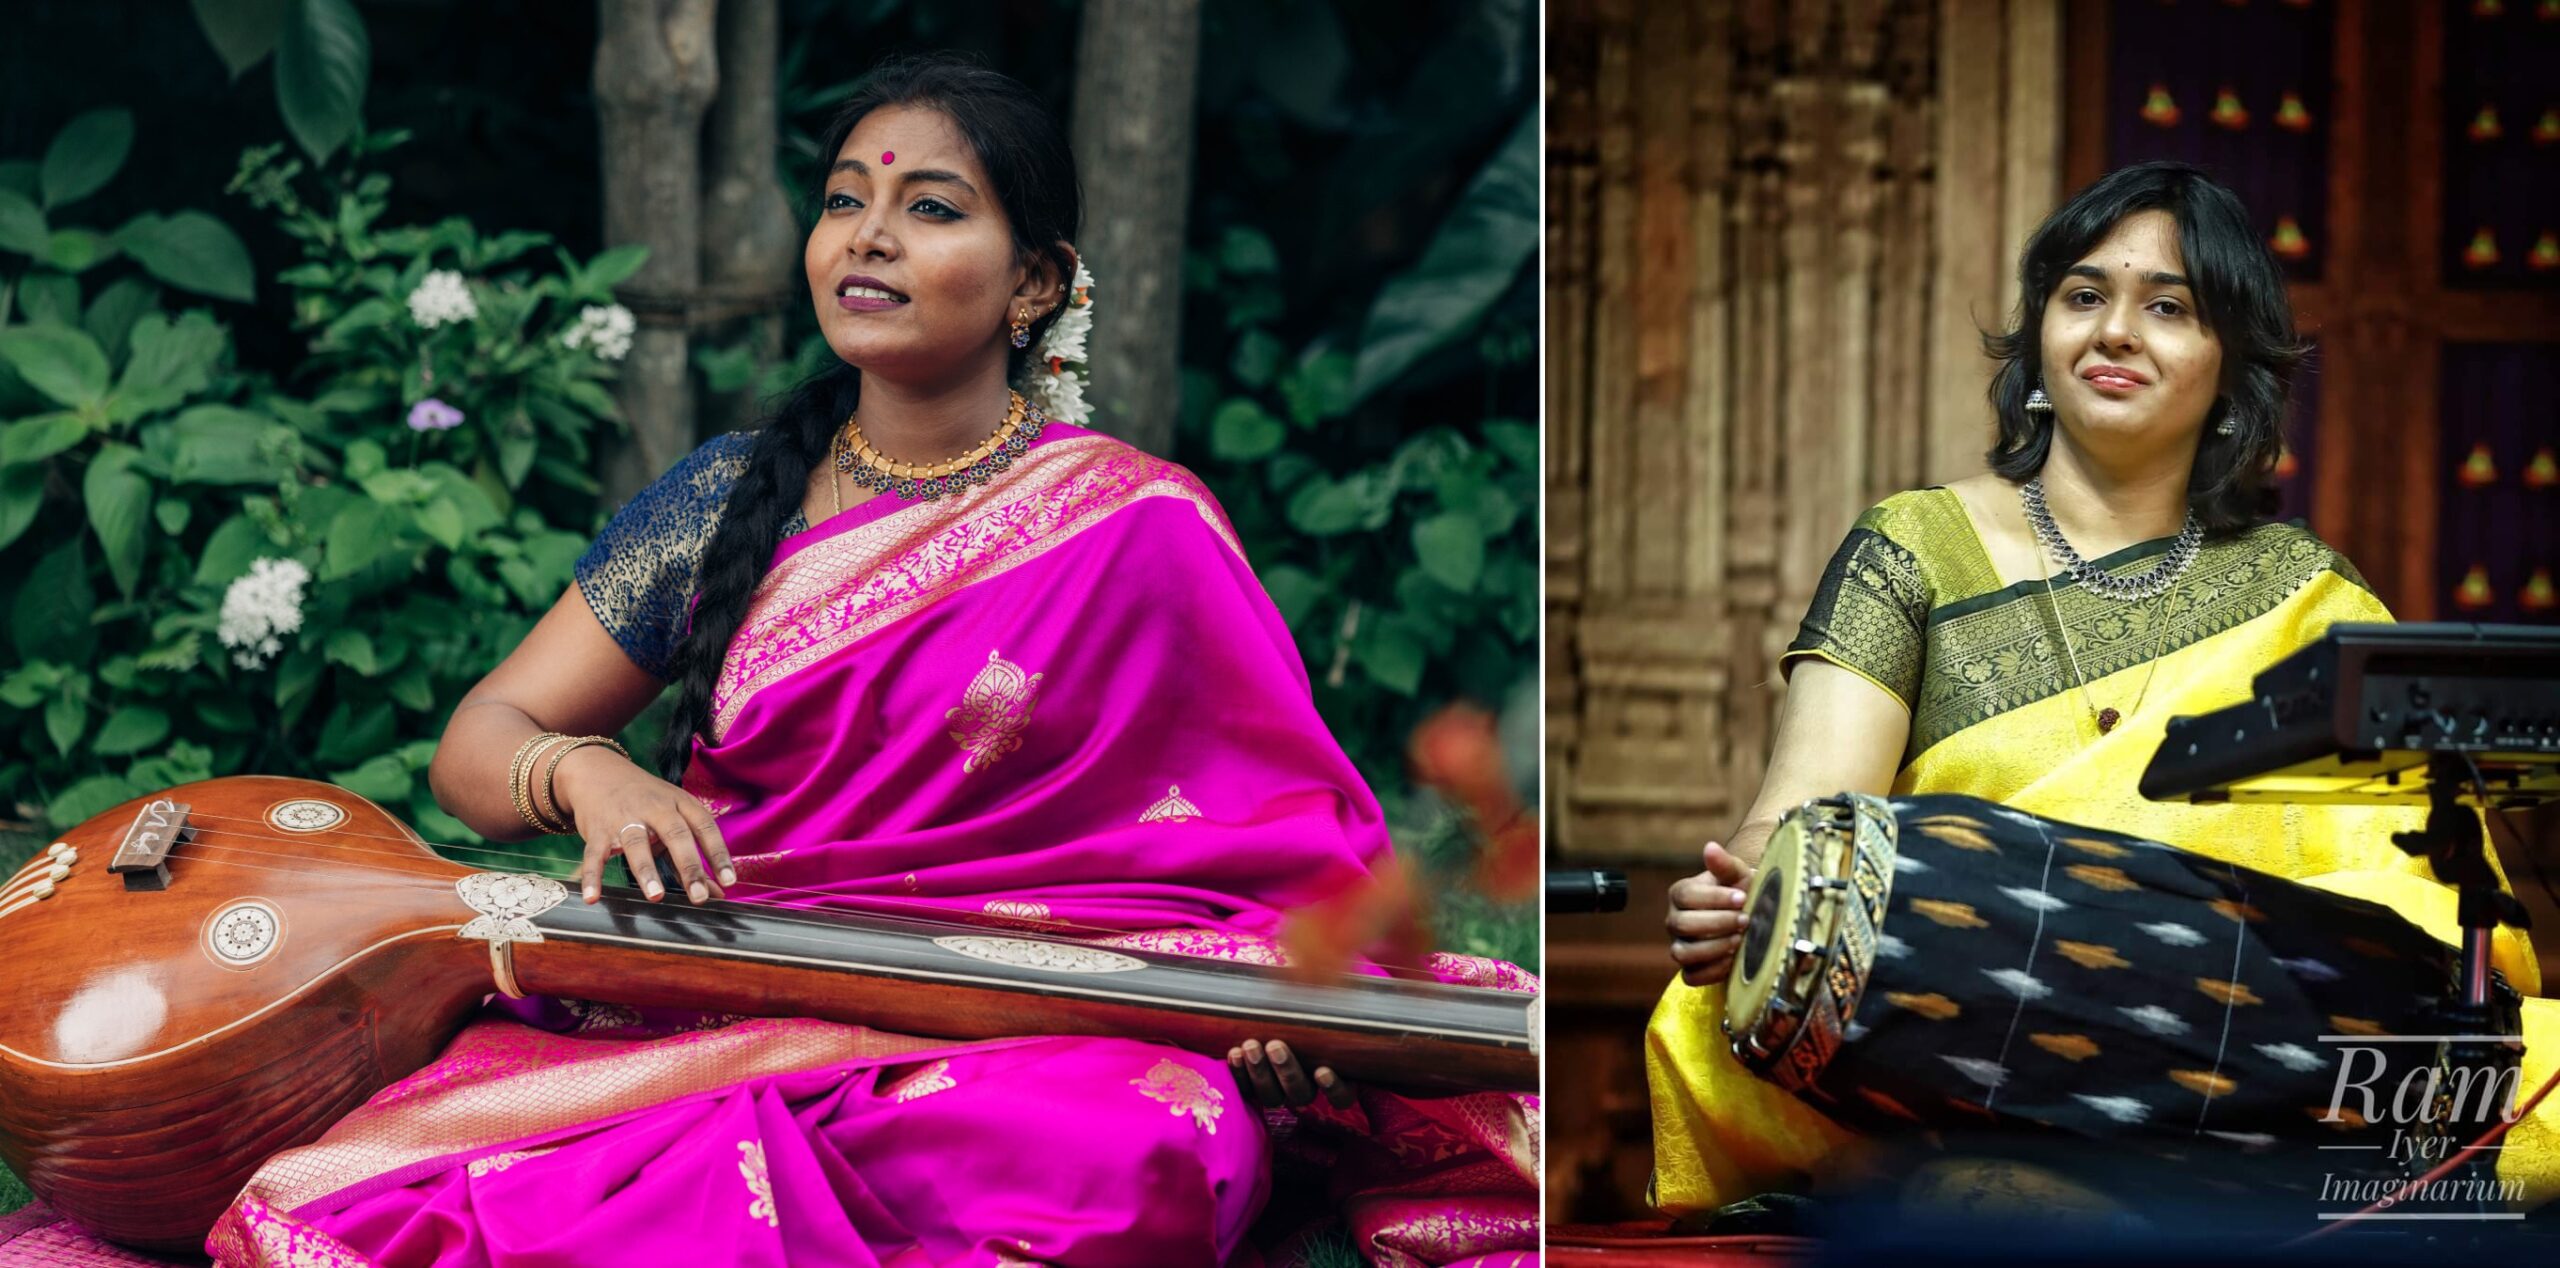 La chanteuse Brindha Manickavasakan fait partie de la jeune génération d'artistes carnatiques. Elle est accompagnée de la jeune percussionniste Aswini Srinivasan, l'une des rares femmes à jouer du mridangam à un niveau professionnel.